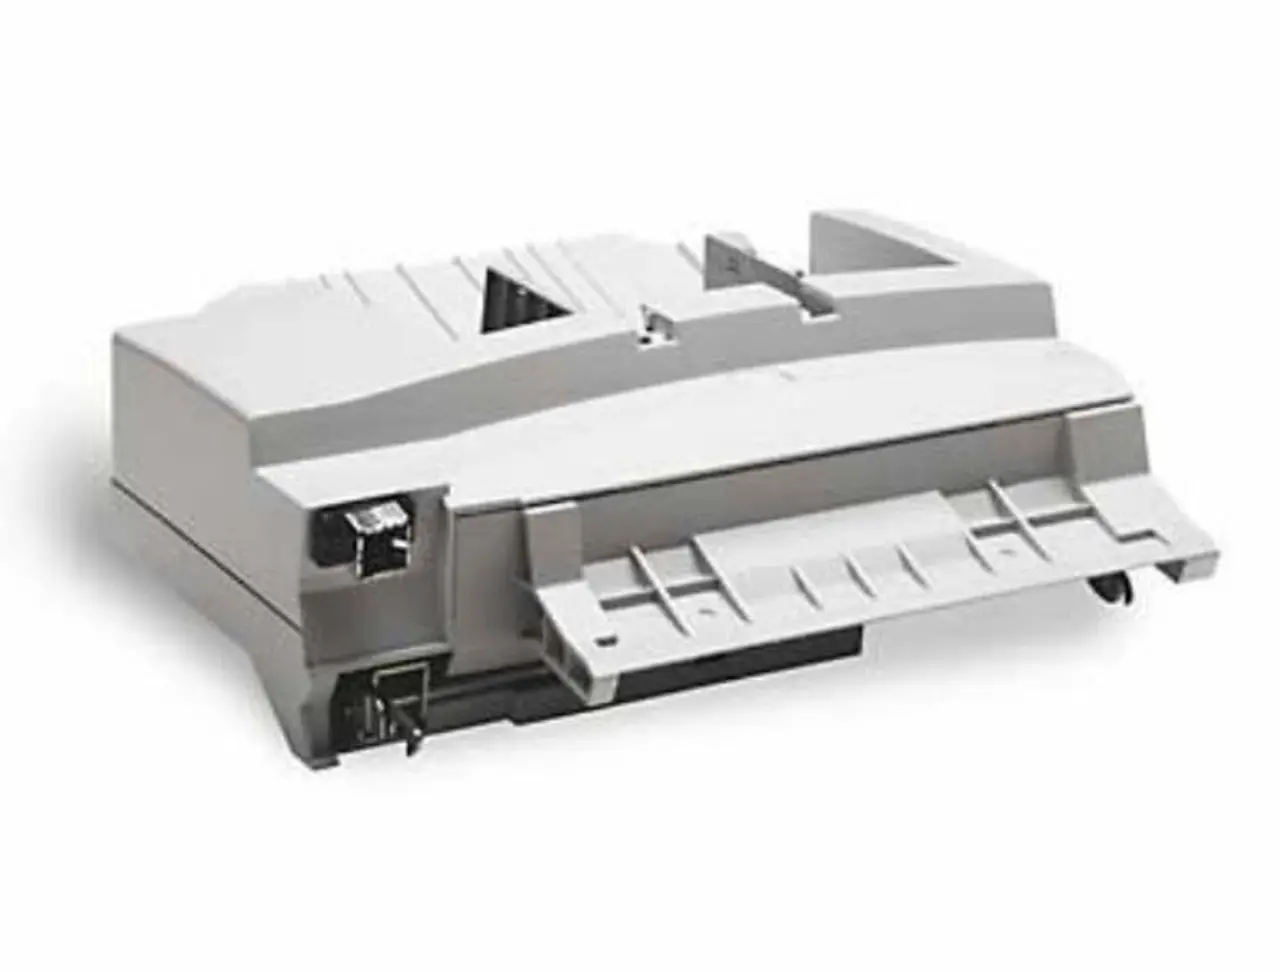 hewlett packard copier for envelopes - What printer setting for envelopes